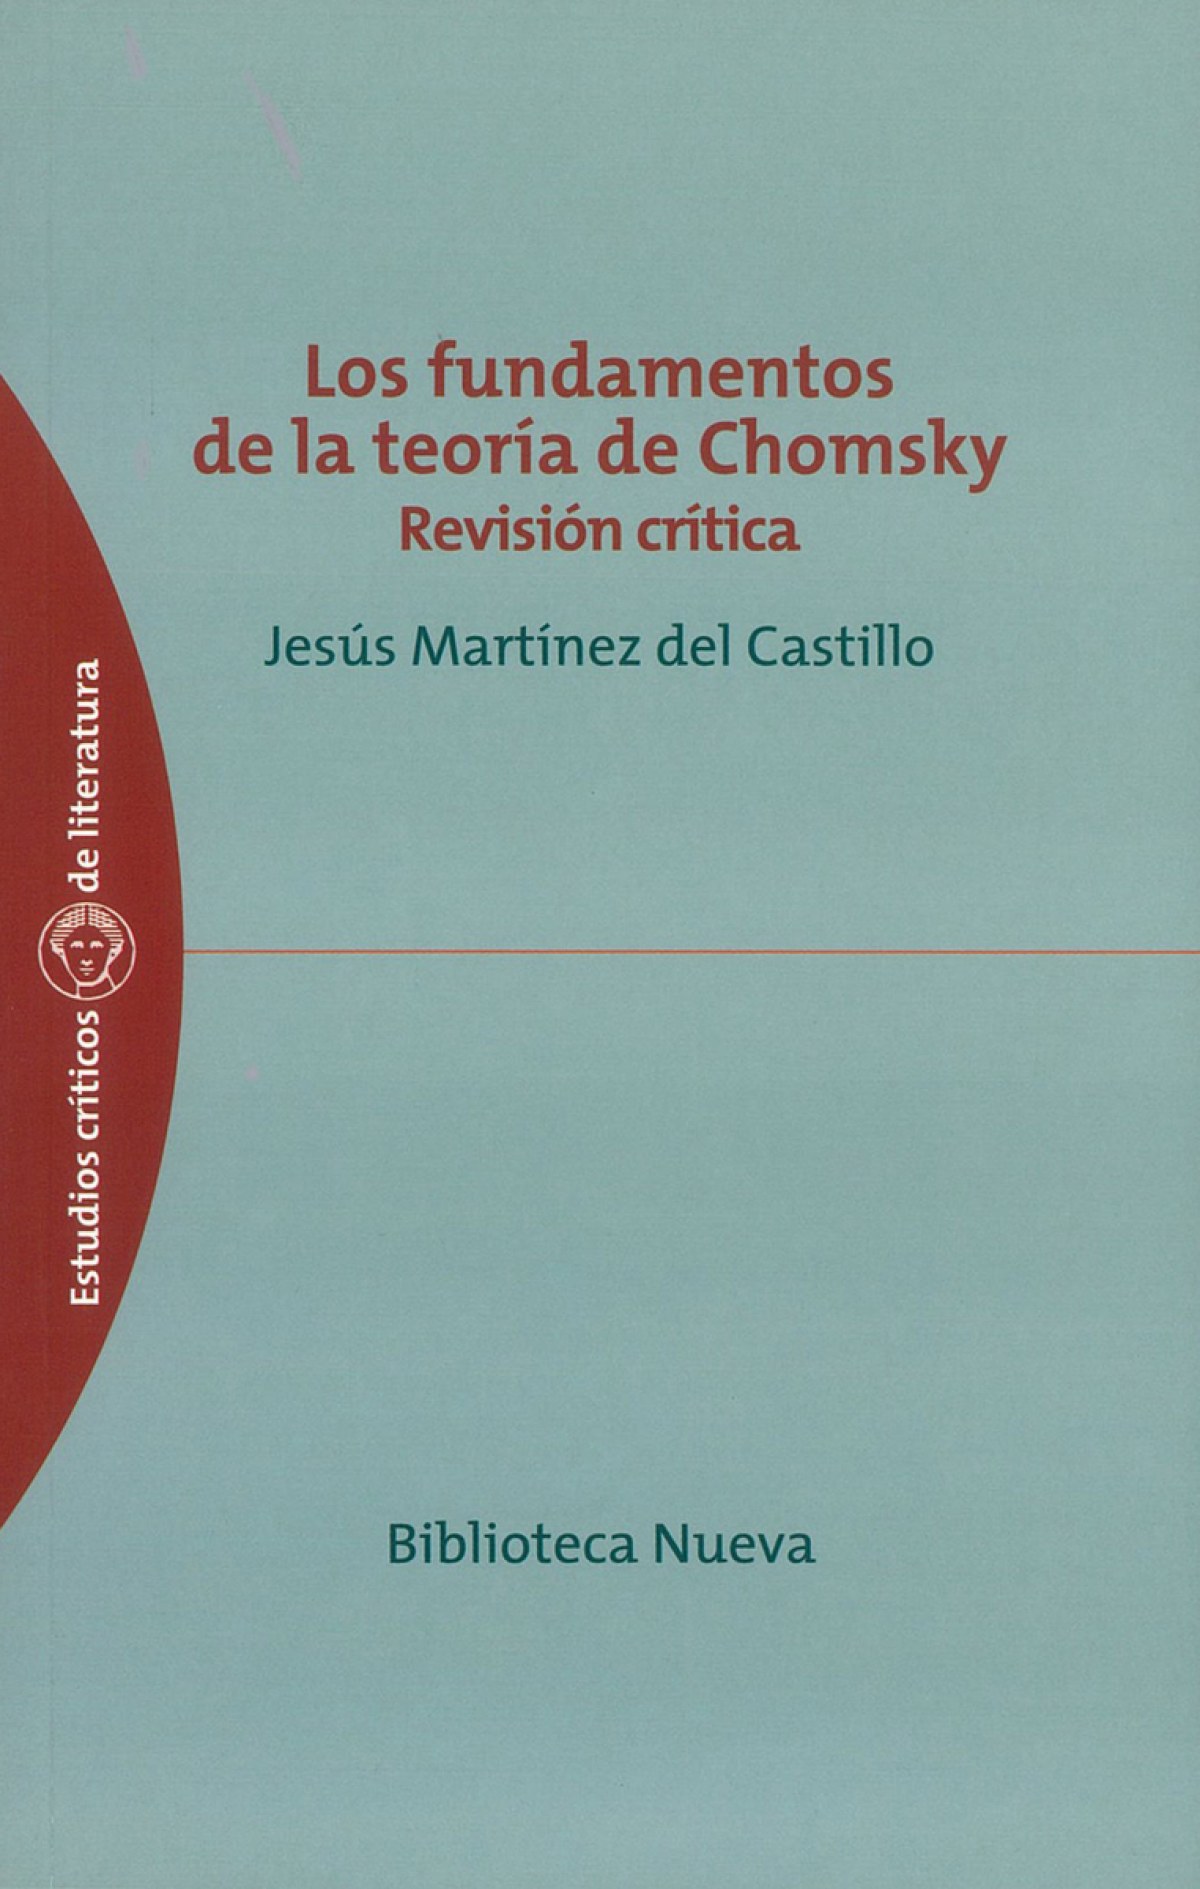 Fundamentos de la teoria de chomsky revision critica,los - Martinez Del Castillo,Jesus